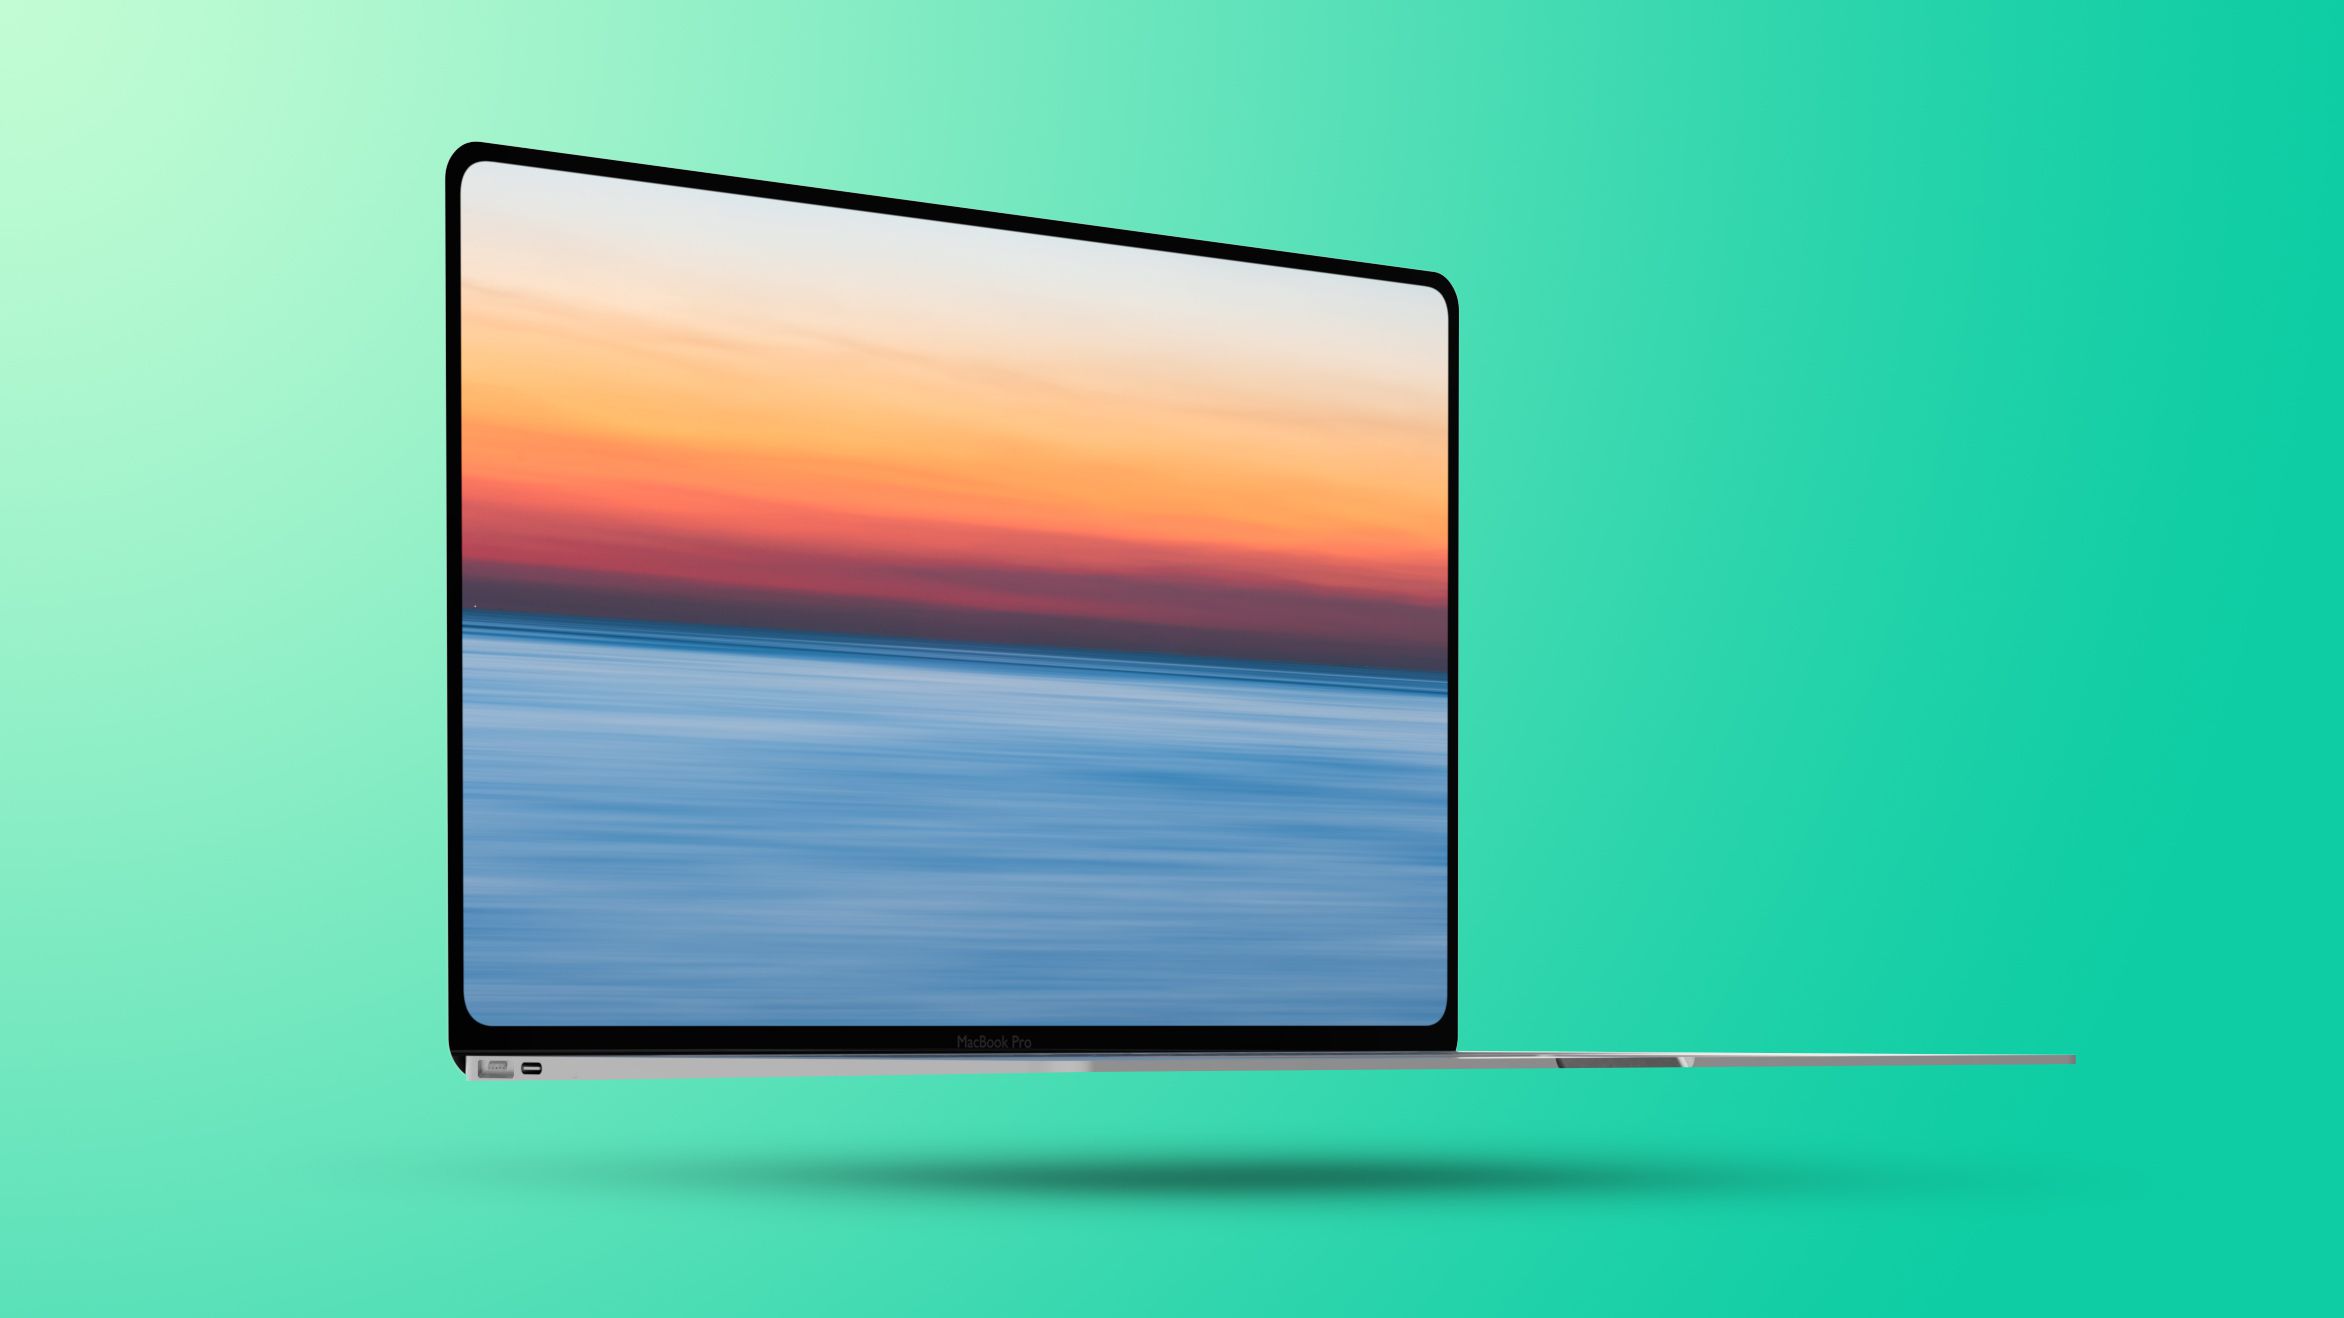 MacBook Air cũng được đồn đại sẽ ra mắt vào năm 2022 và có thiết kế đỉnh cao